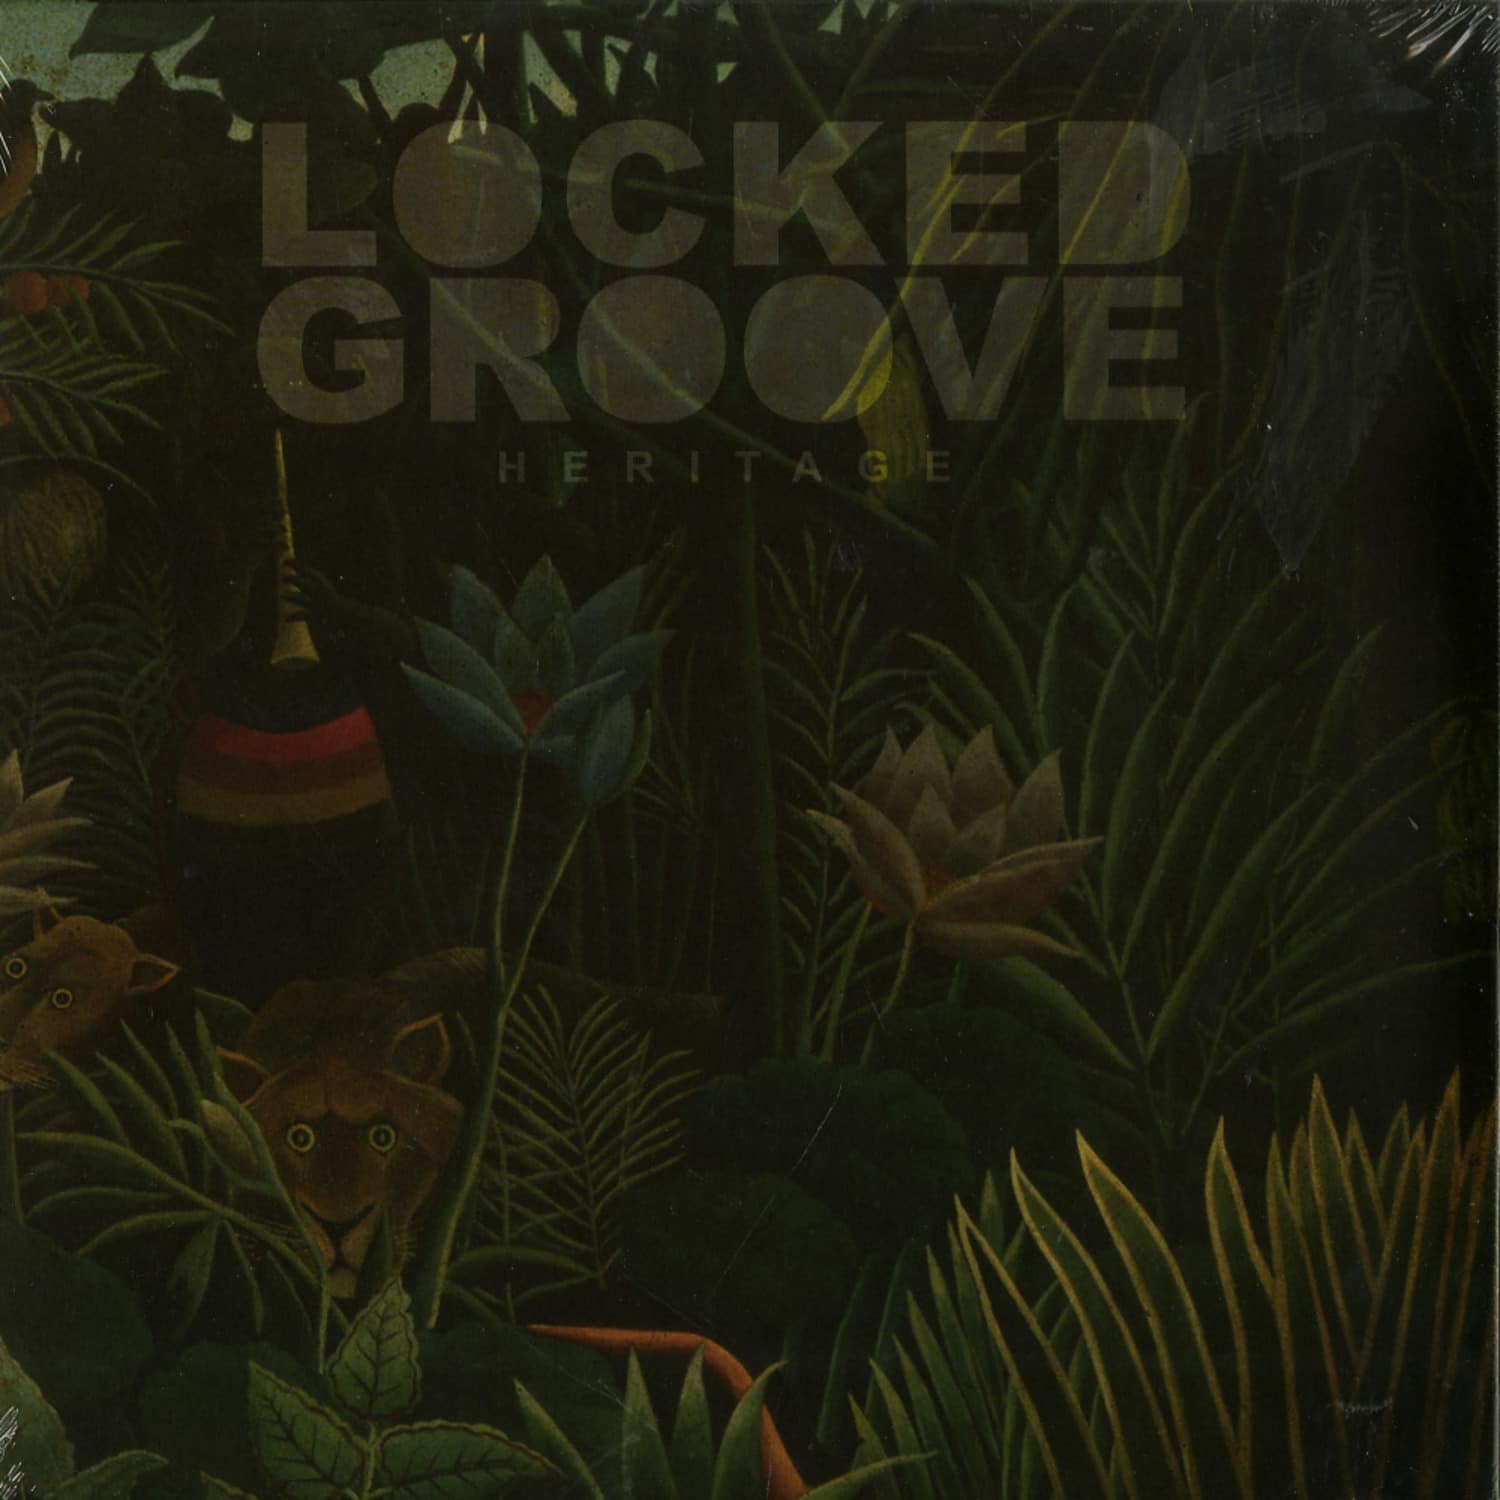 Locked Groove - HERITAGE EP 